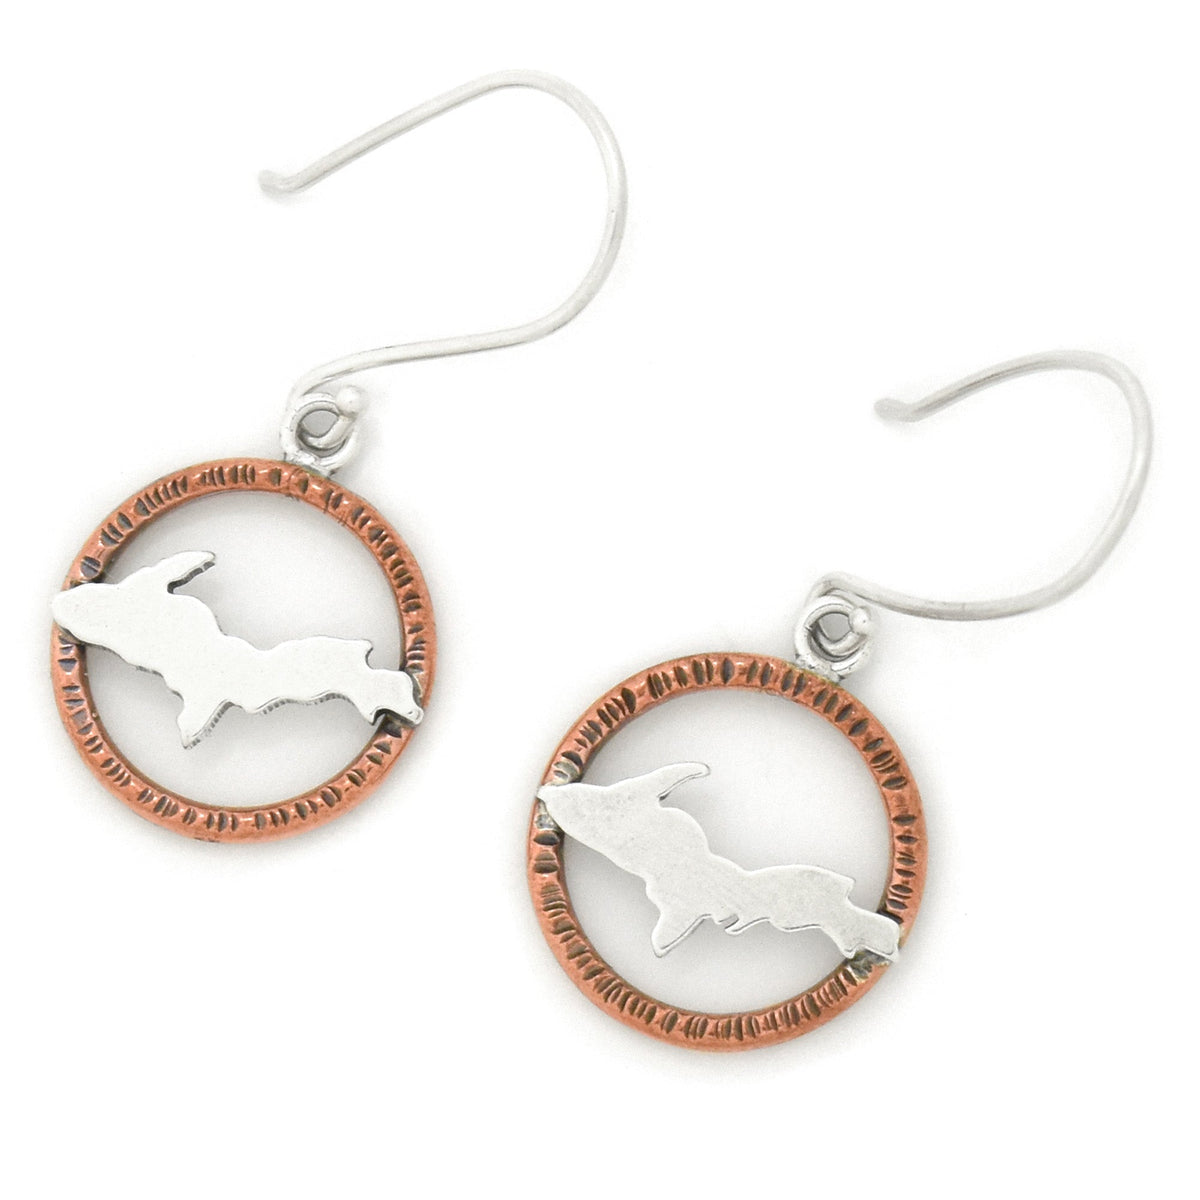 Upper Peninsula Hoop Earrings - Mixed Metal Earrings   7089 - handmade by Beth Millner Jewelry